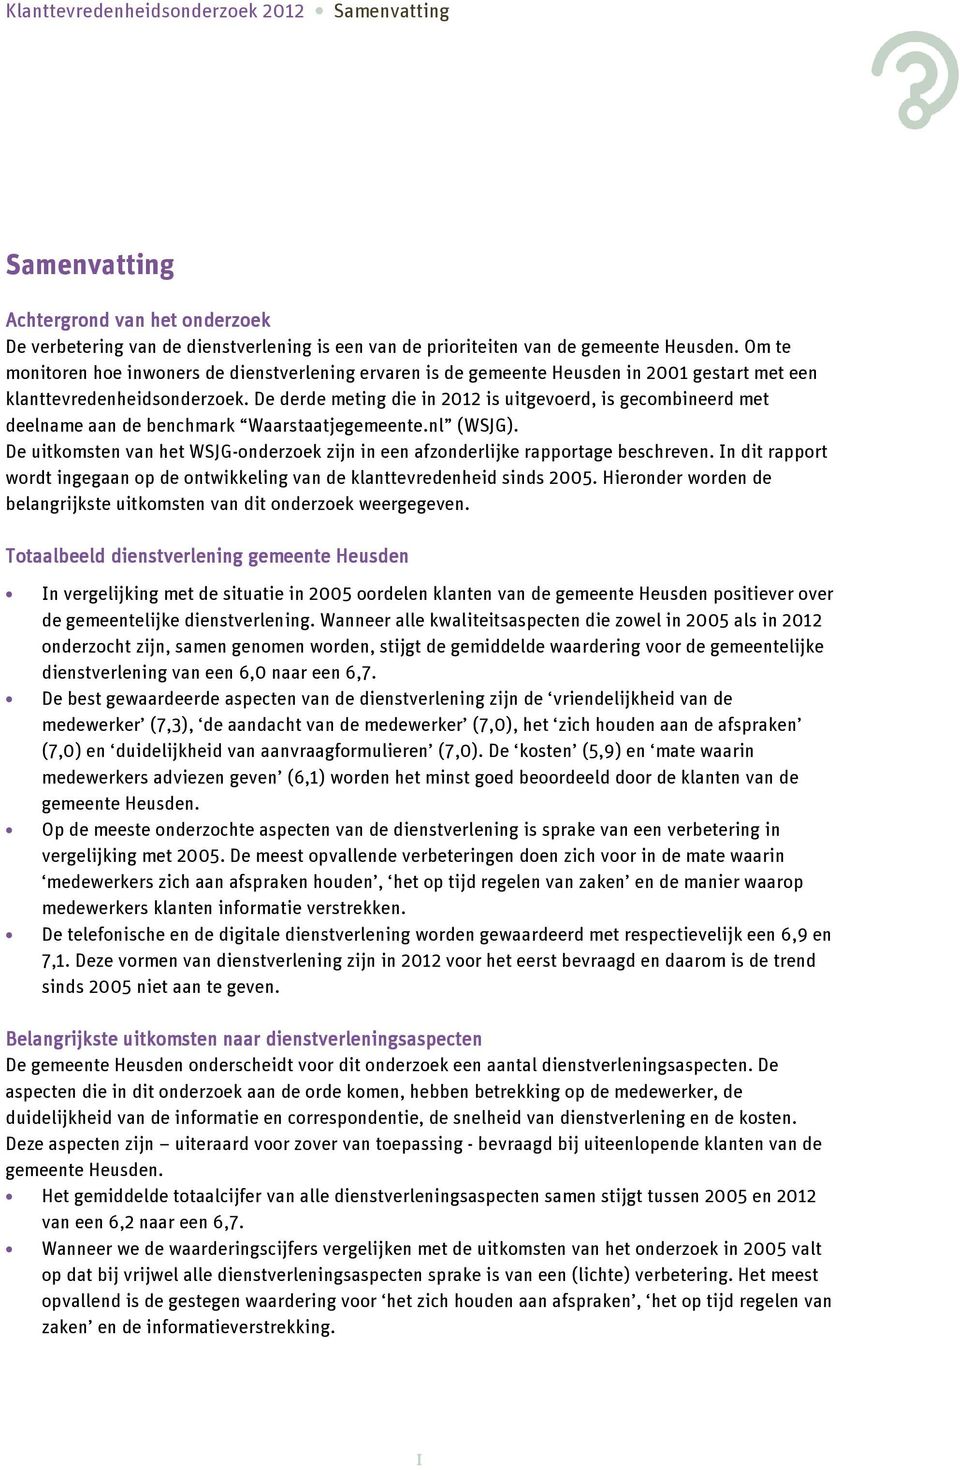 De derde meting die in 2012 is uitgevoerd, is gecombineerd met deelname aan de benchmark Waarstaatjegemeente.nl (WSJG).